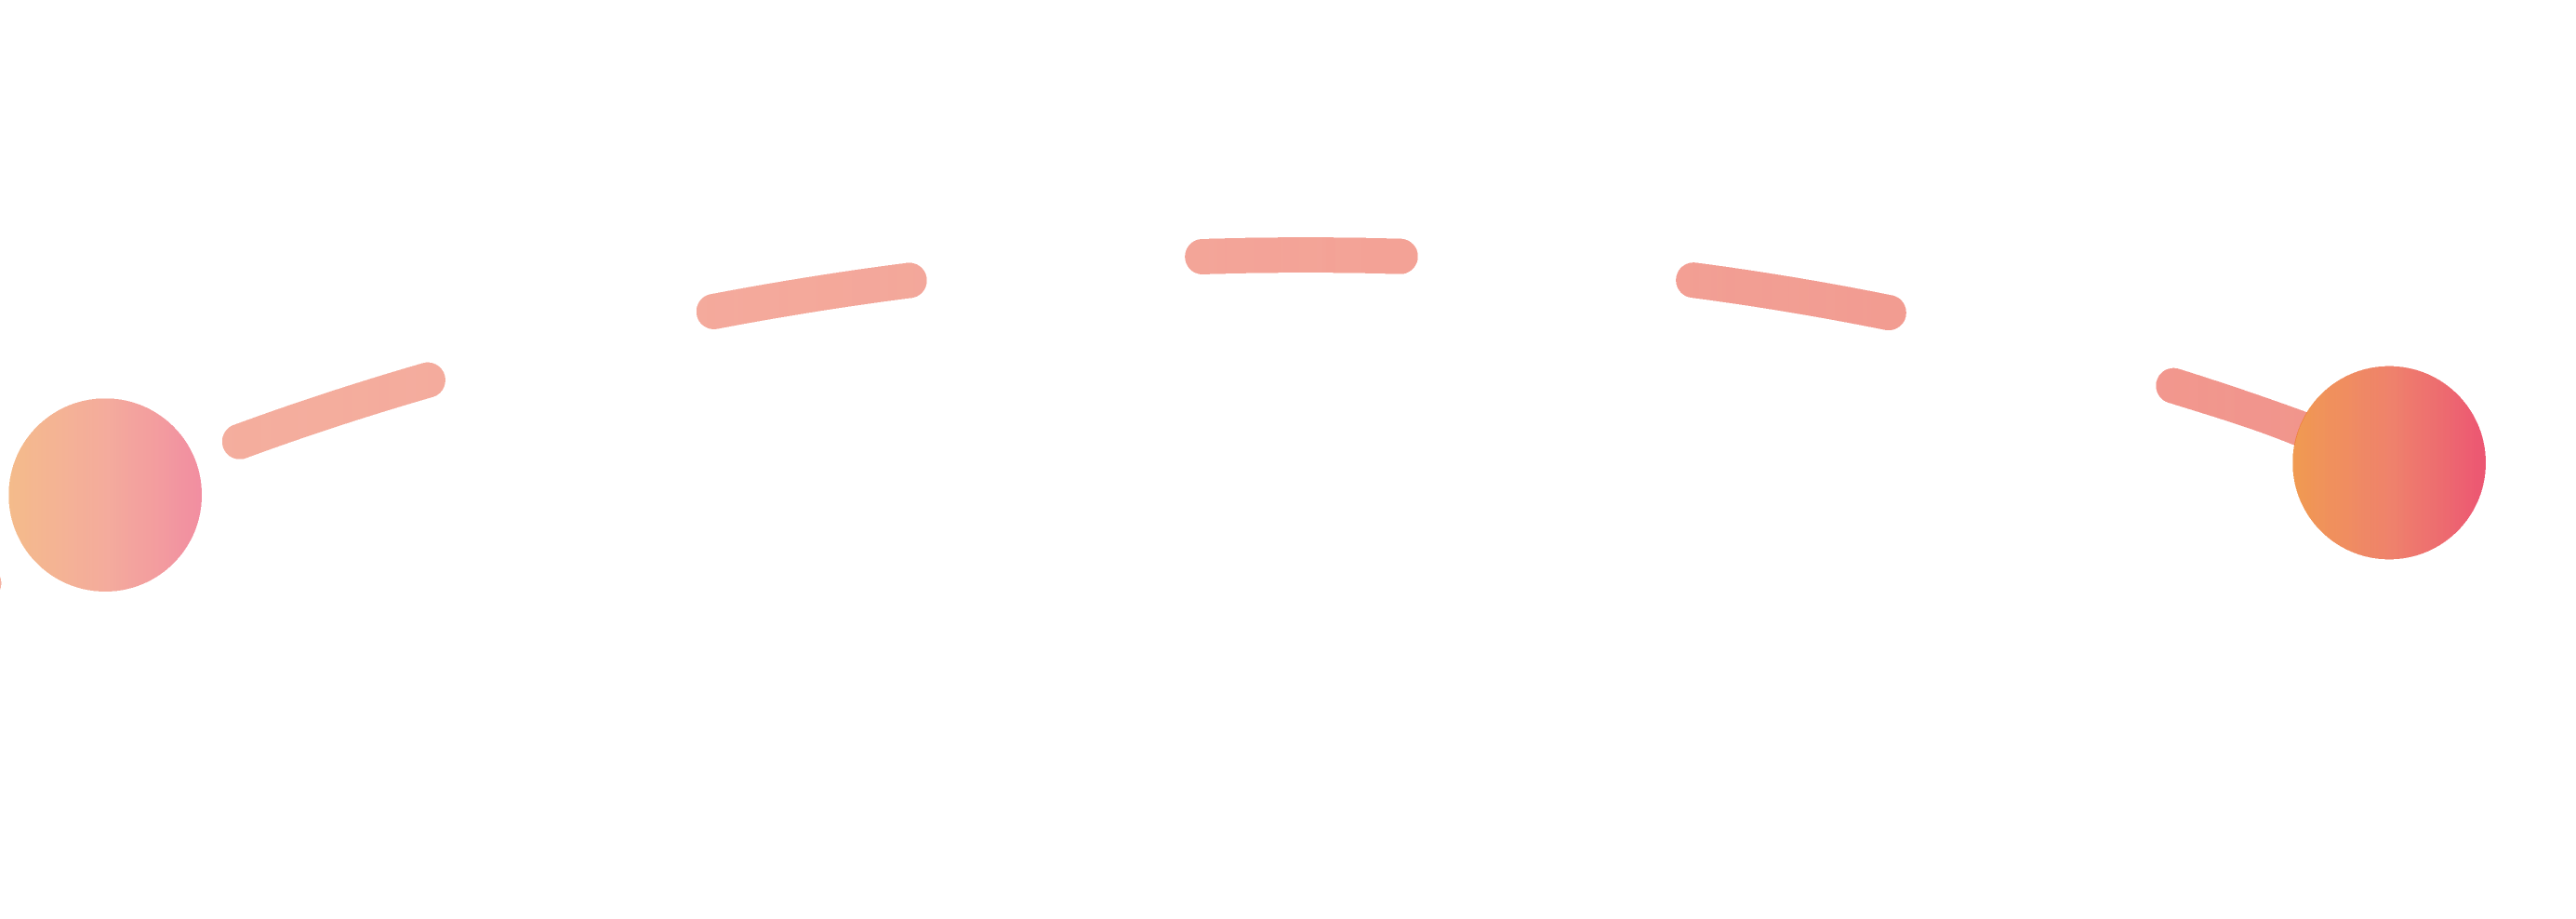 Orangefarbene Linie, die den dritten Schritt des Bewerbungsprozesses darstellt.